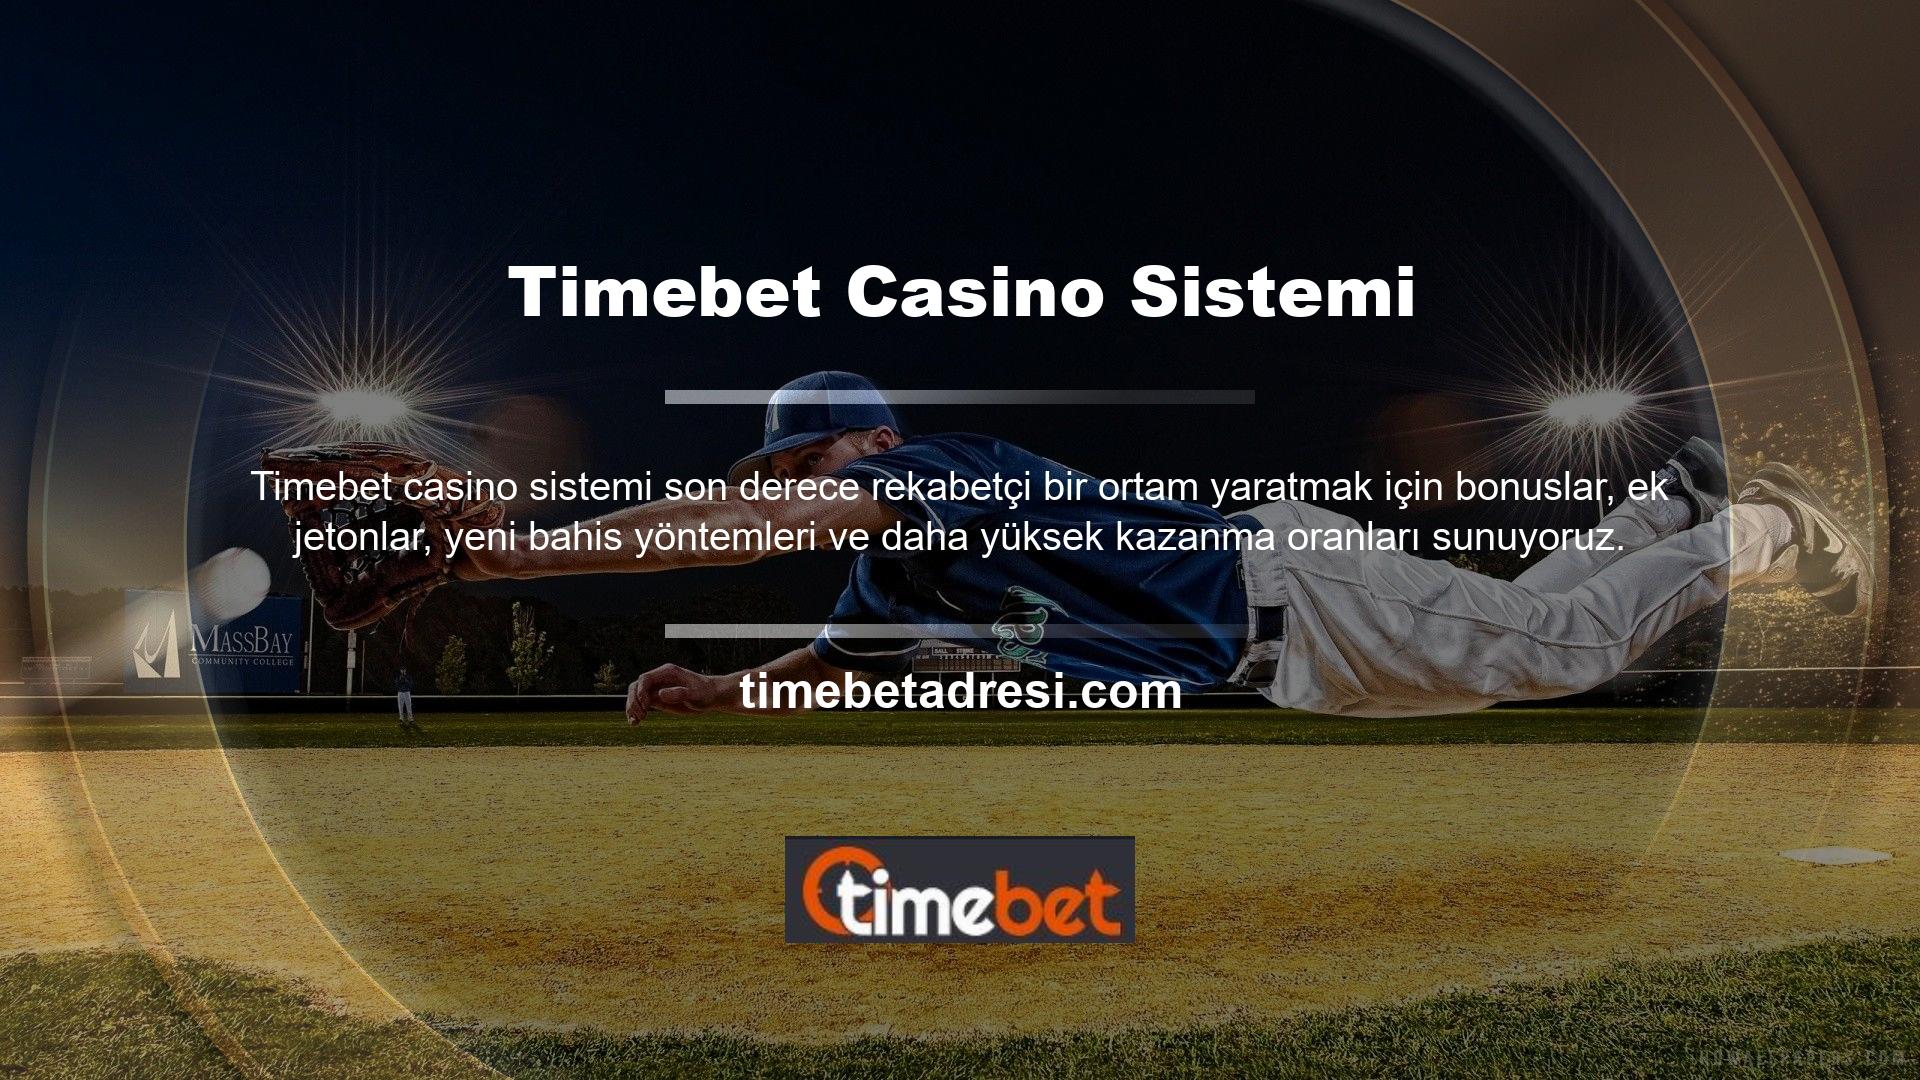 Timebet oyununun sonuç alanında büyük yardımlar alabilir ve daha rahat bir alanda maddi gelir elde edebilirsiniz